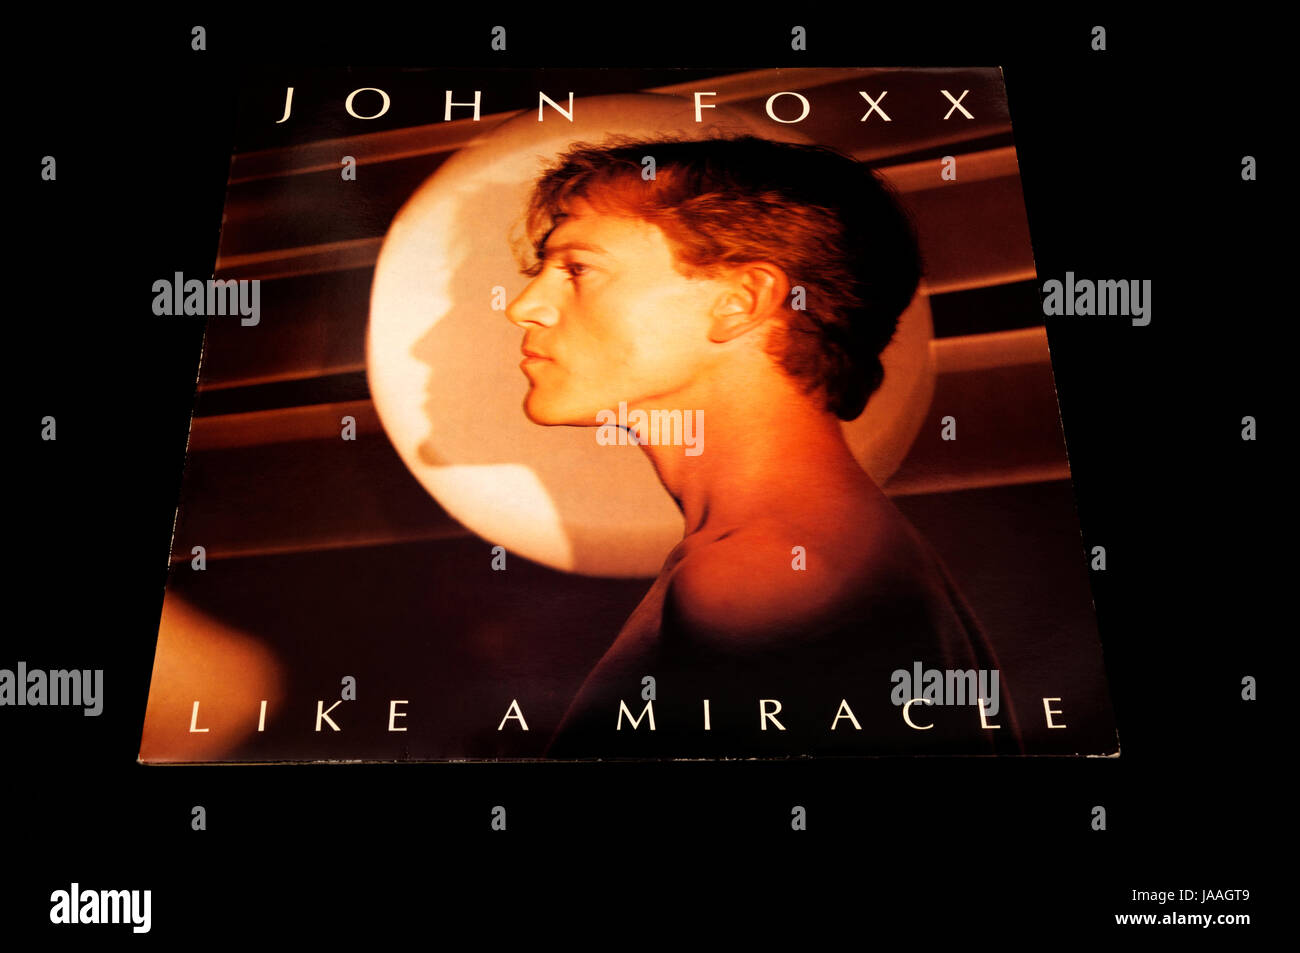 John Foxx come un miracolo 12pollici singolo in vinile Foto Stock